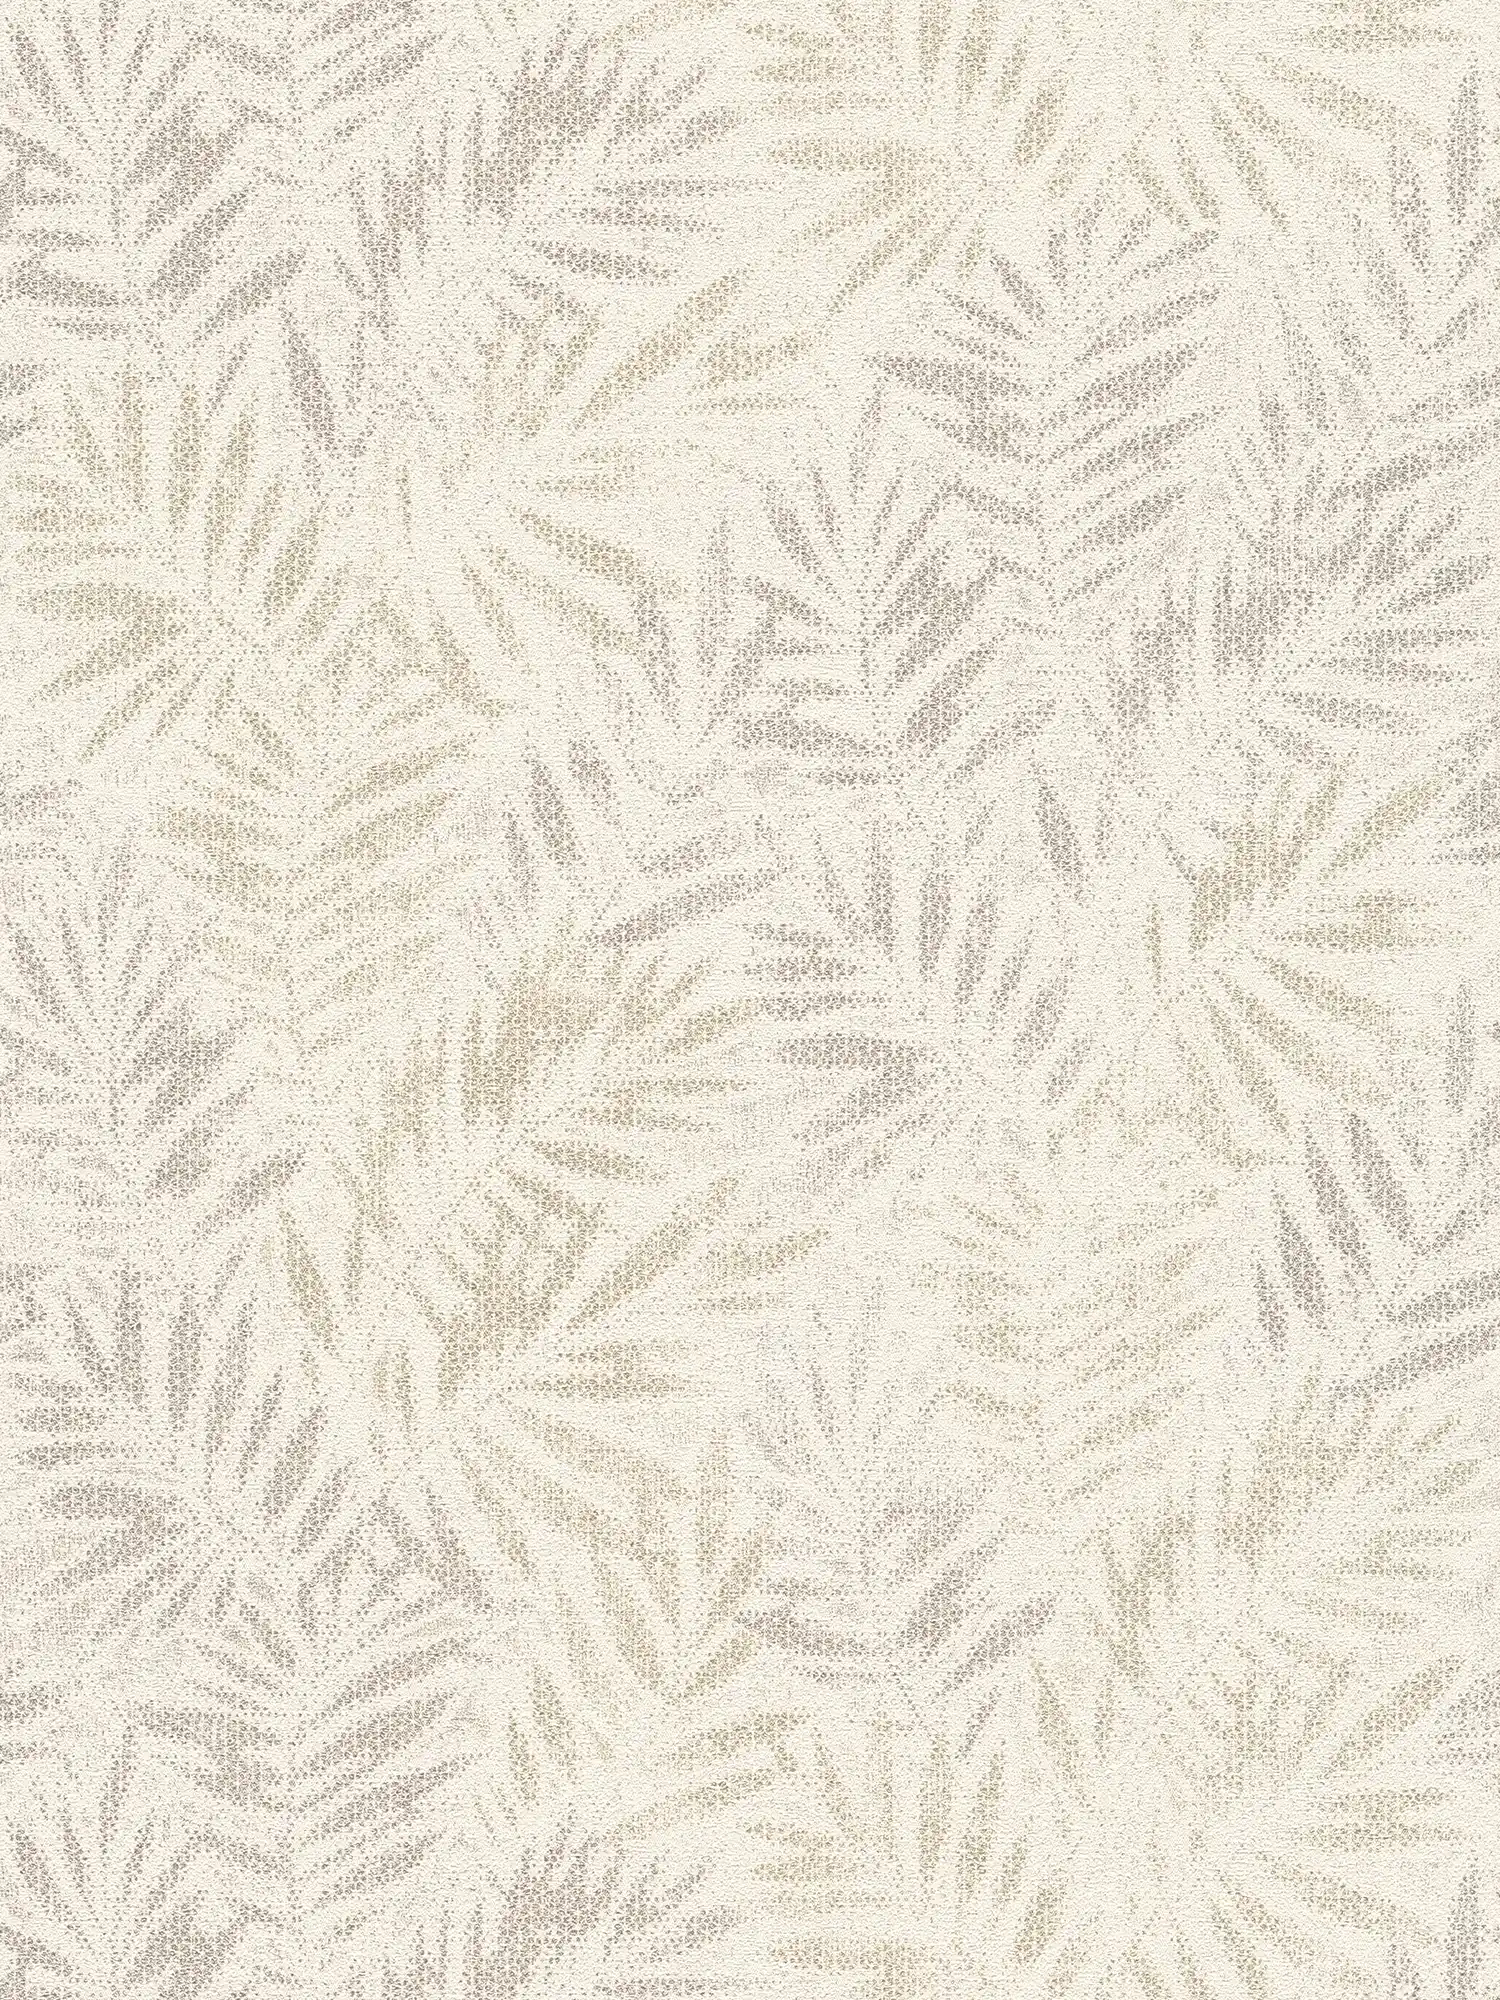 Vliesbehang met glanzend bladmotief - wit, grijs, zilver
